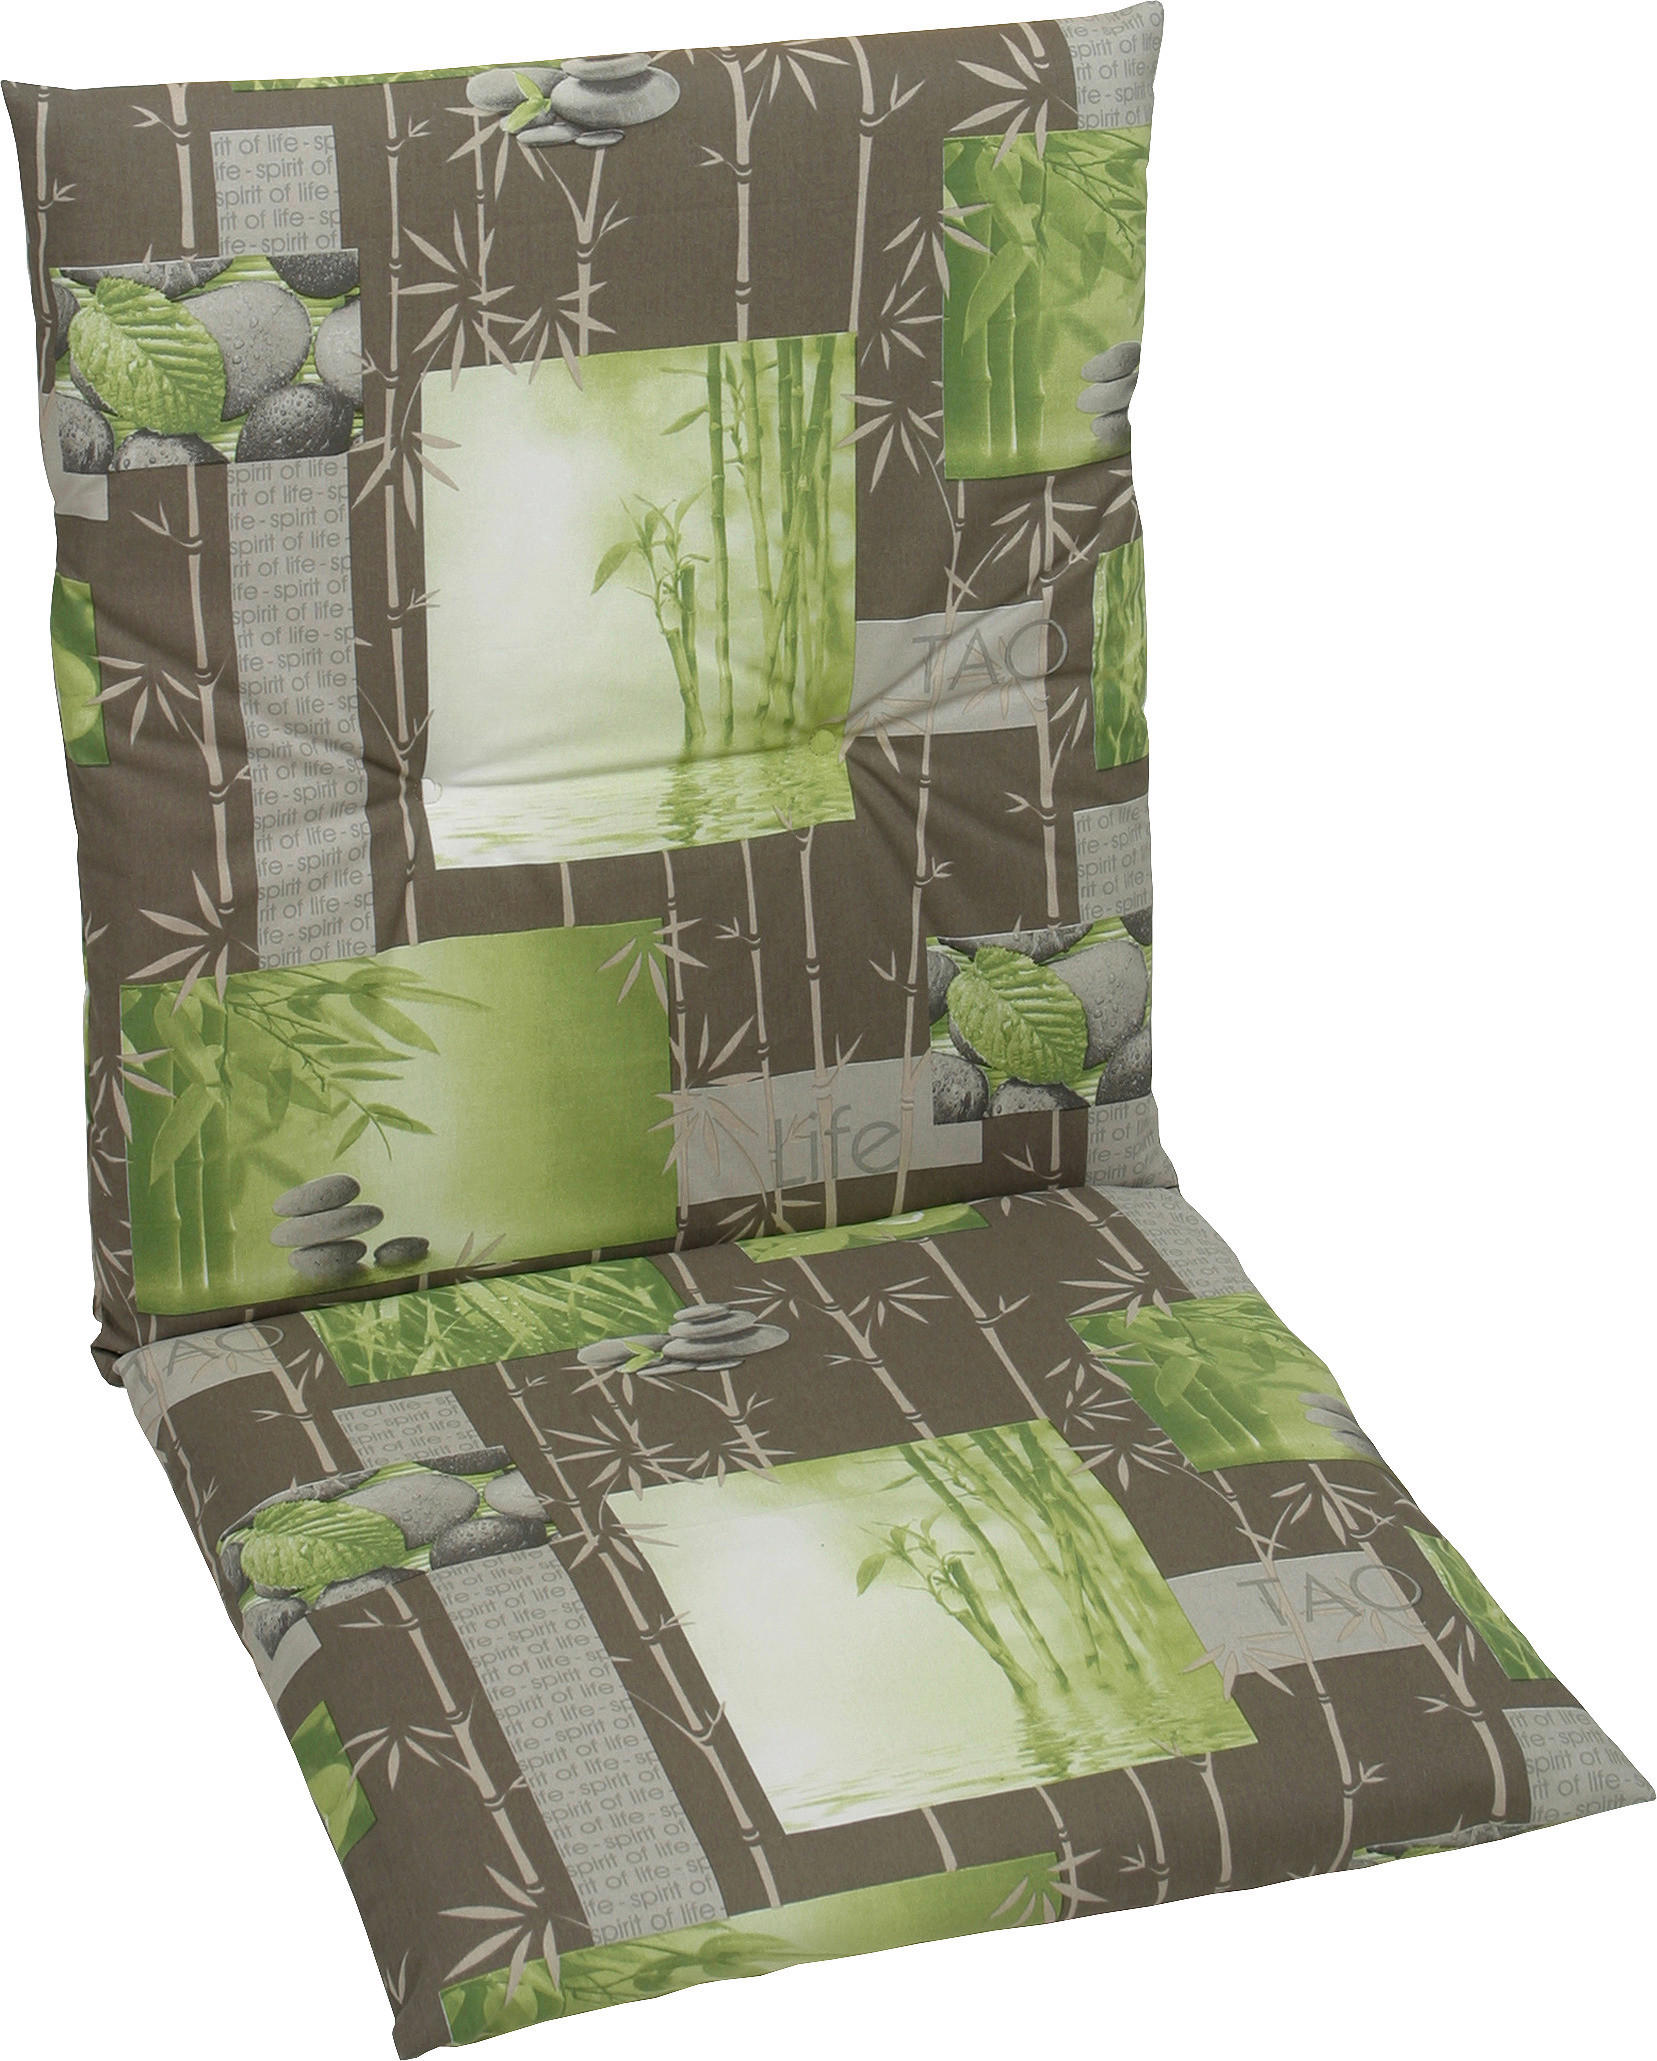 Sesselauflage mit Blatt-Motiv Grün & Grau kaufen